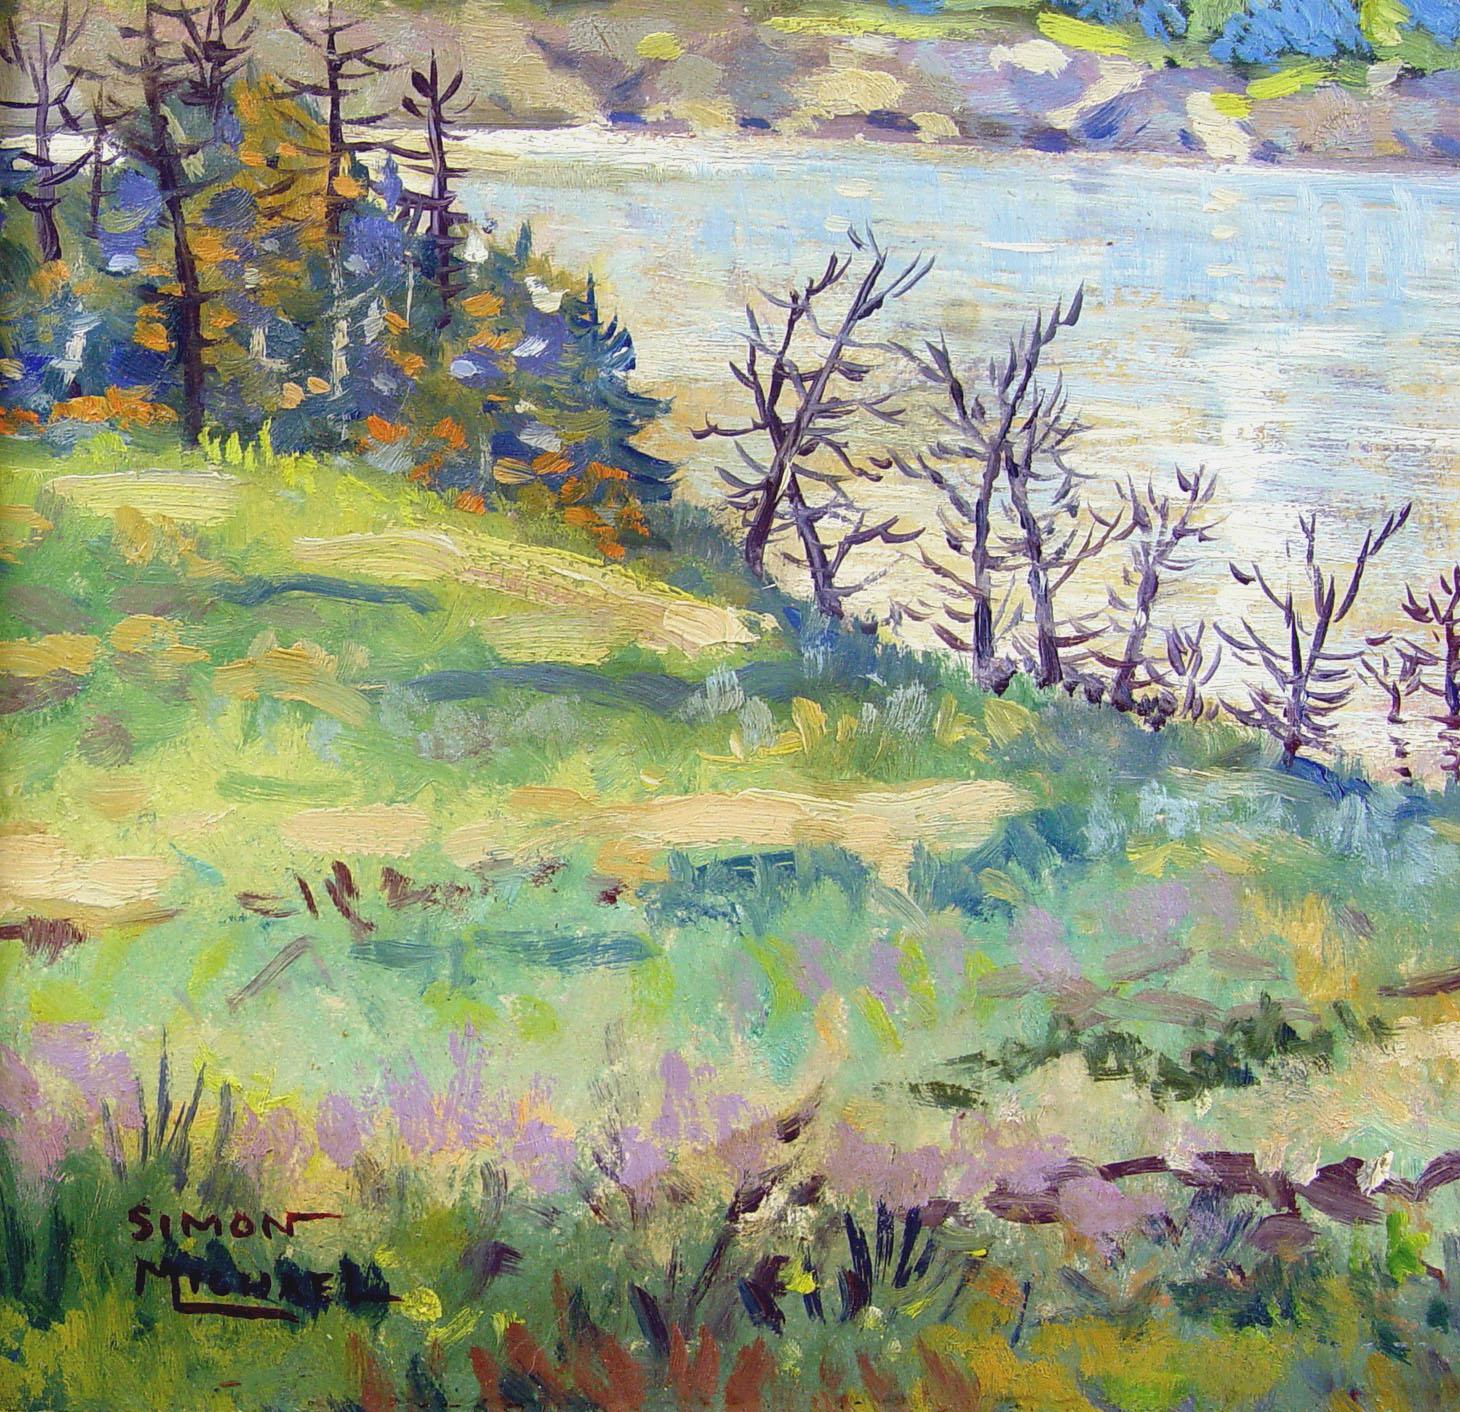 Vintage circa 1940's impressionistische Landschaft Öl auf Masonit von Simon Michael (1905-2002) Texas, ein bekannter Rockport, Texas Künstler, Lehrer und Philosoph. Signiert in der linken unteren Ecke. Ungerahmt. Wurde professionell gereinigt,